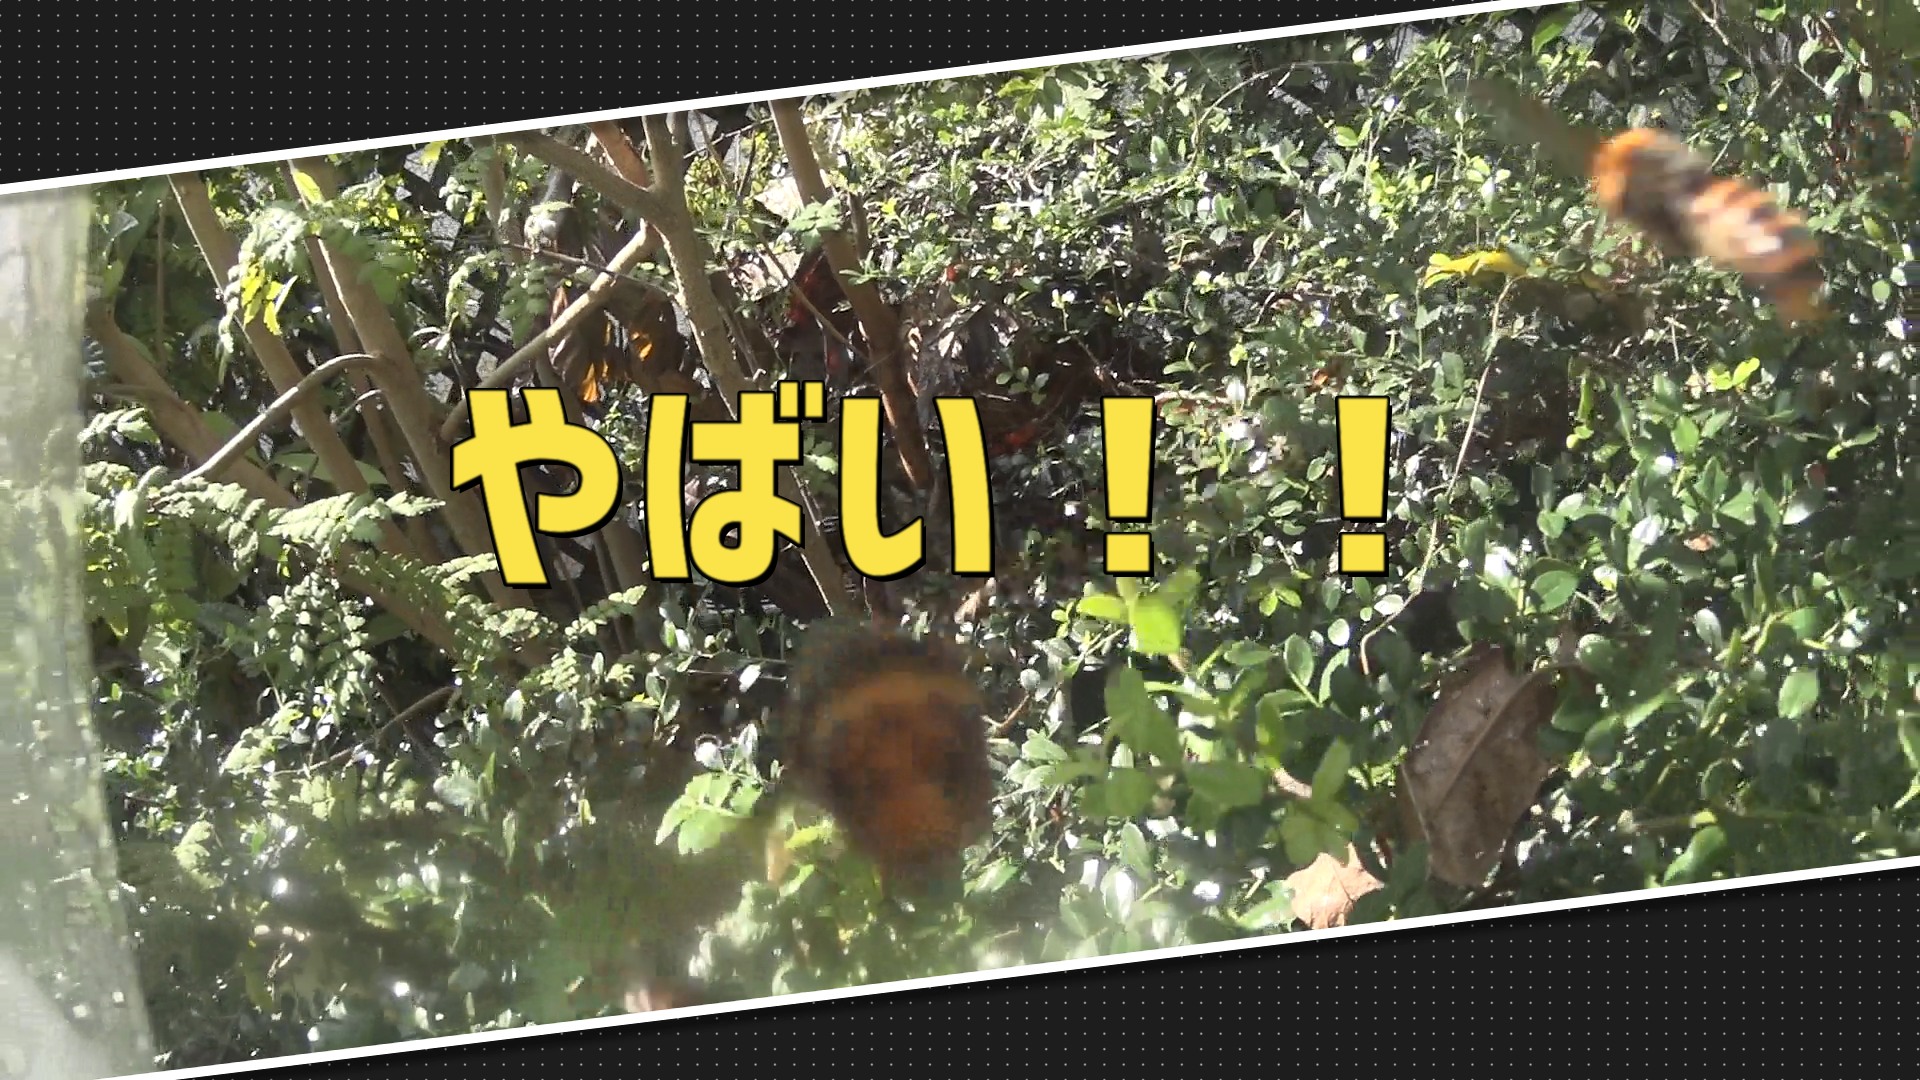 スズメバチの巣駆除動画